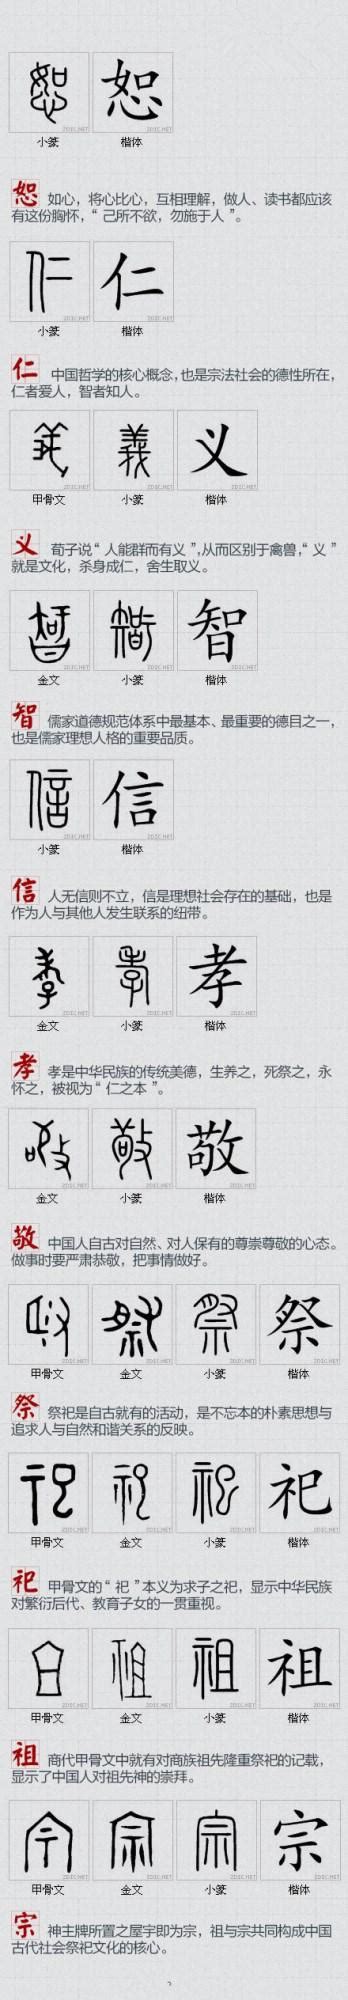 汉字形态演变的基本规律 | TypoChina Chinese